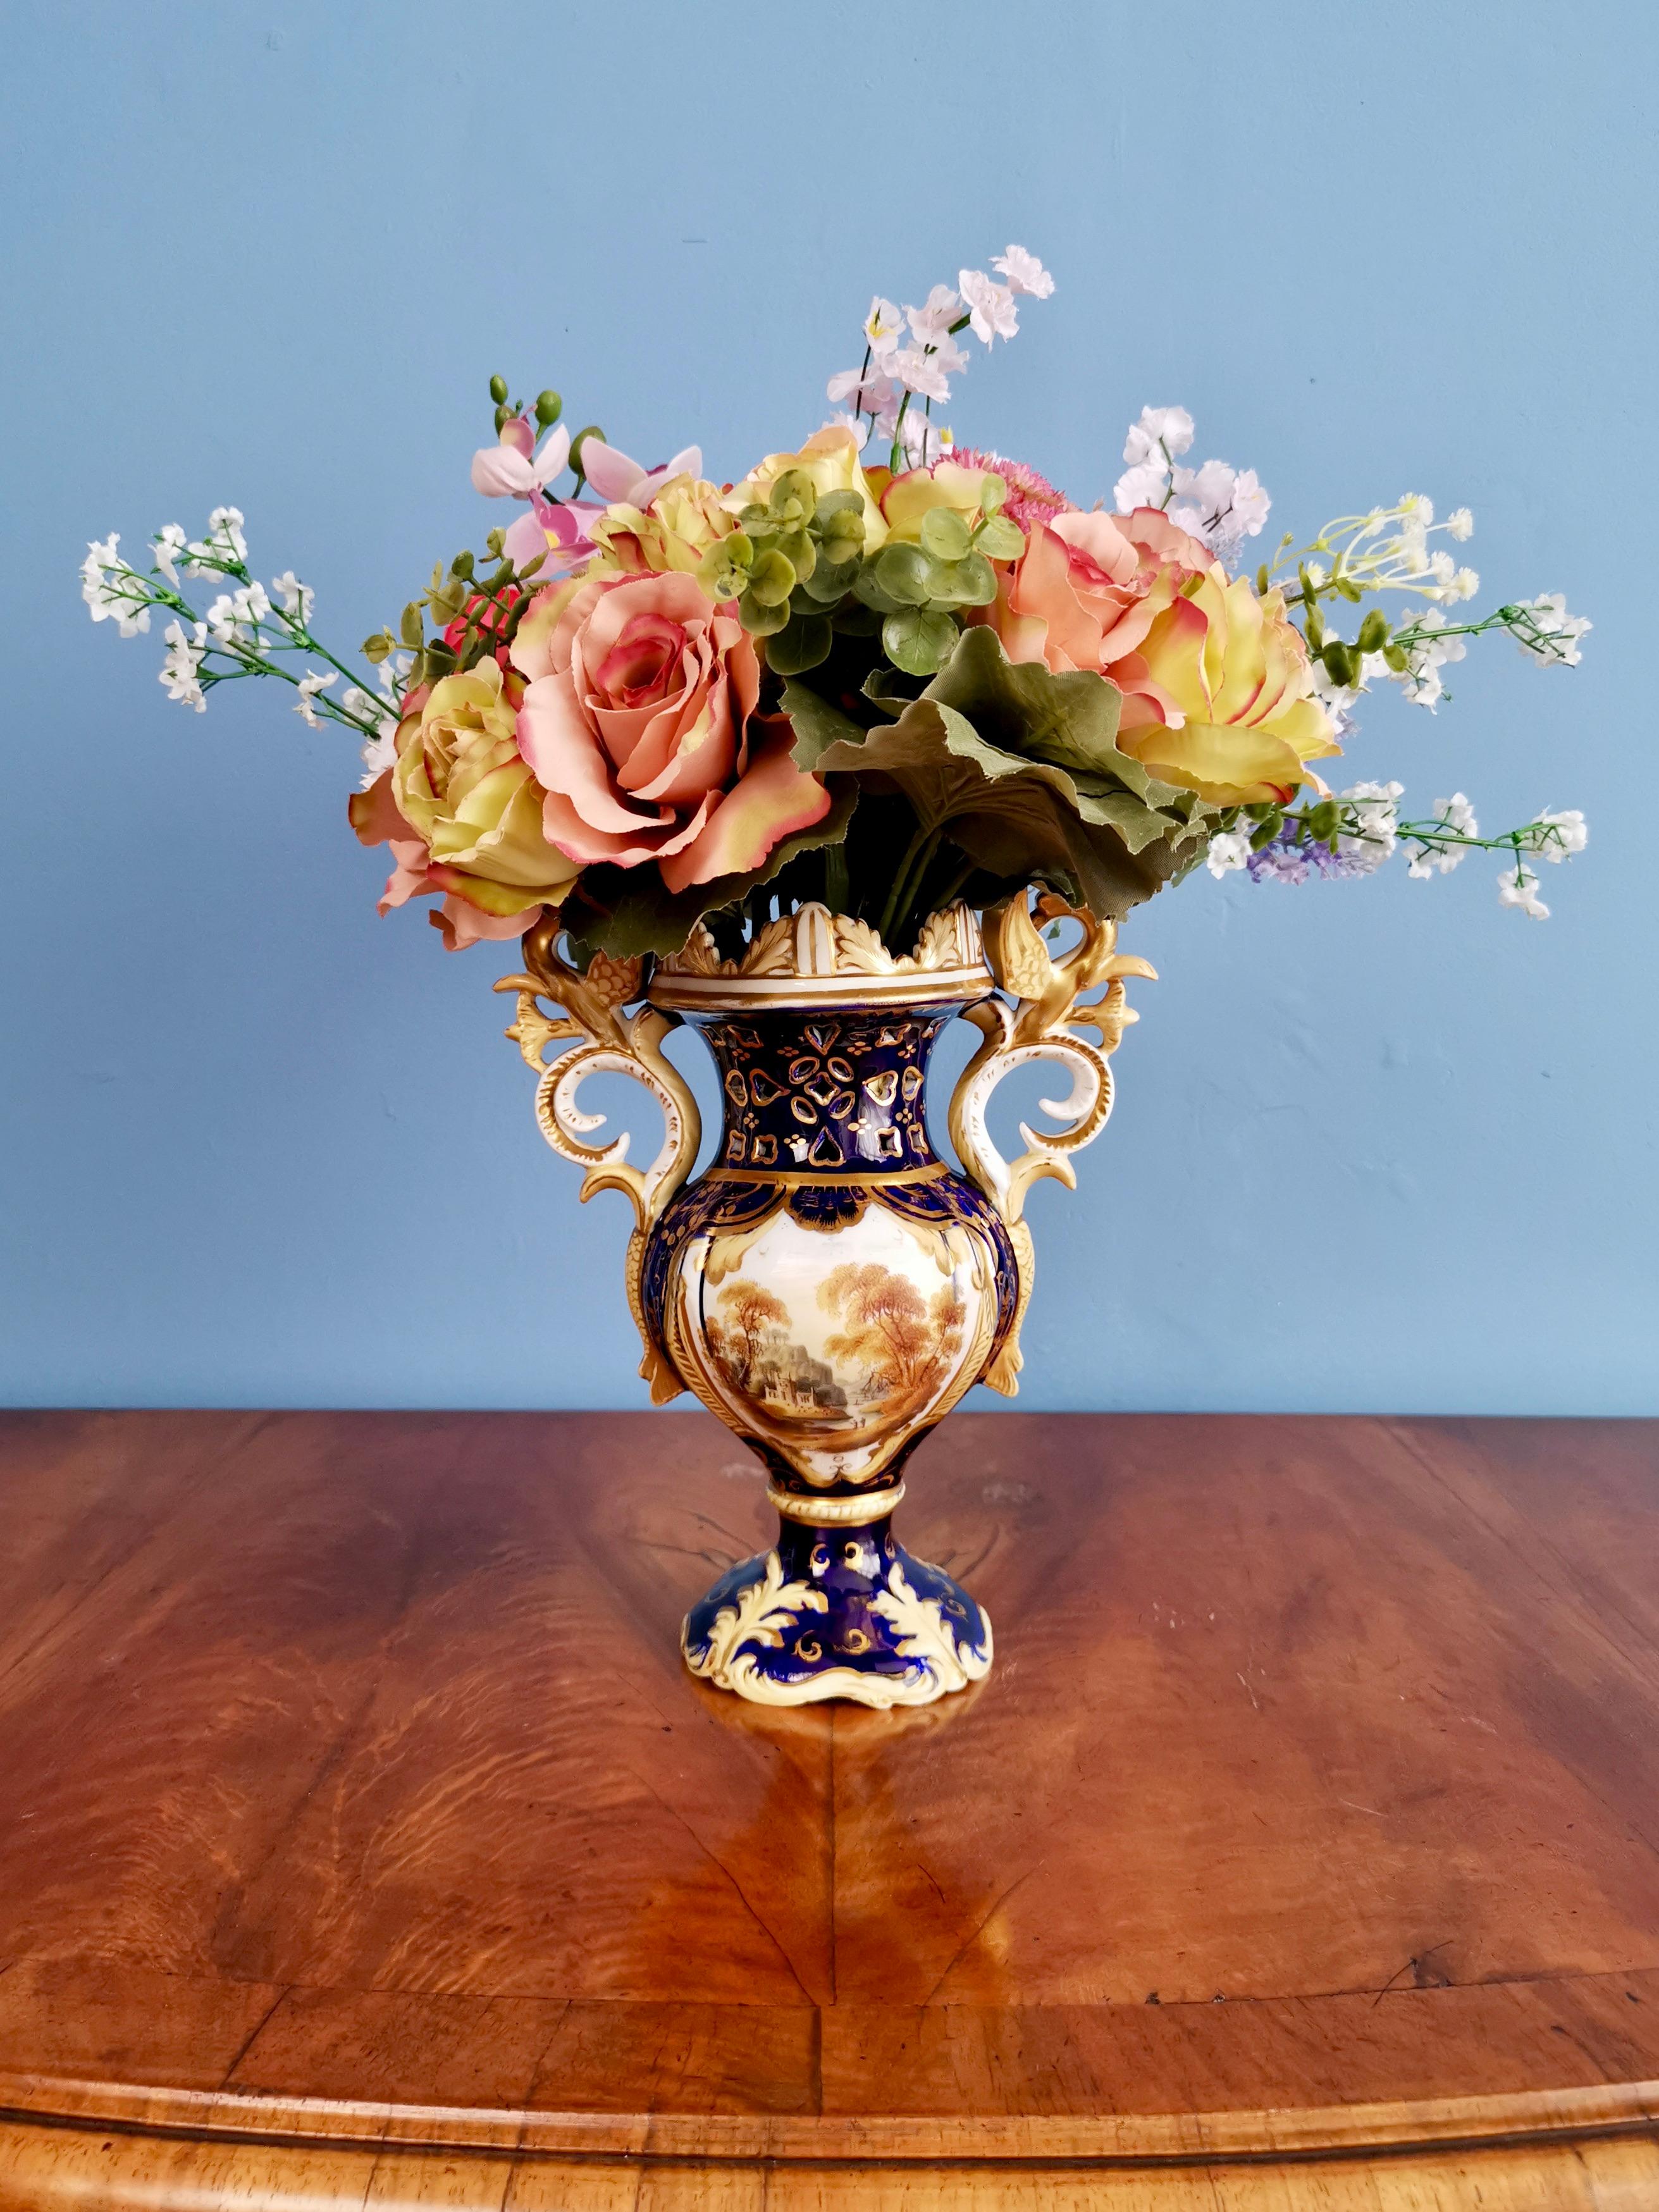 Nous vous proposons un magnifique vase en porcelaine fabriqué par Samuel Alcock vers 1840, à l'époque du renouveau rococo. Le vase a des anses en forme de griffon, un fond bleu cobalt, une somptueuse dorure et une belle peinture de paysage.

Samuel